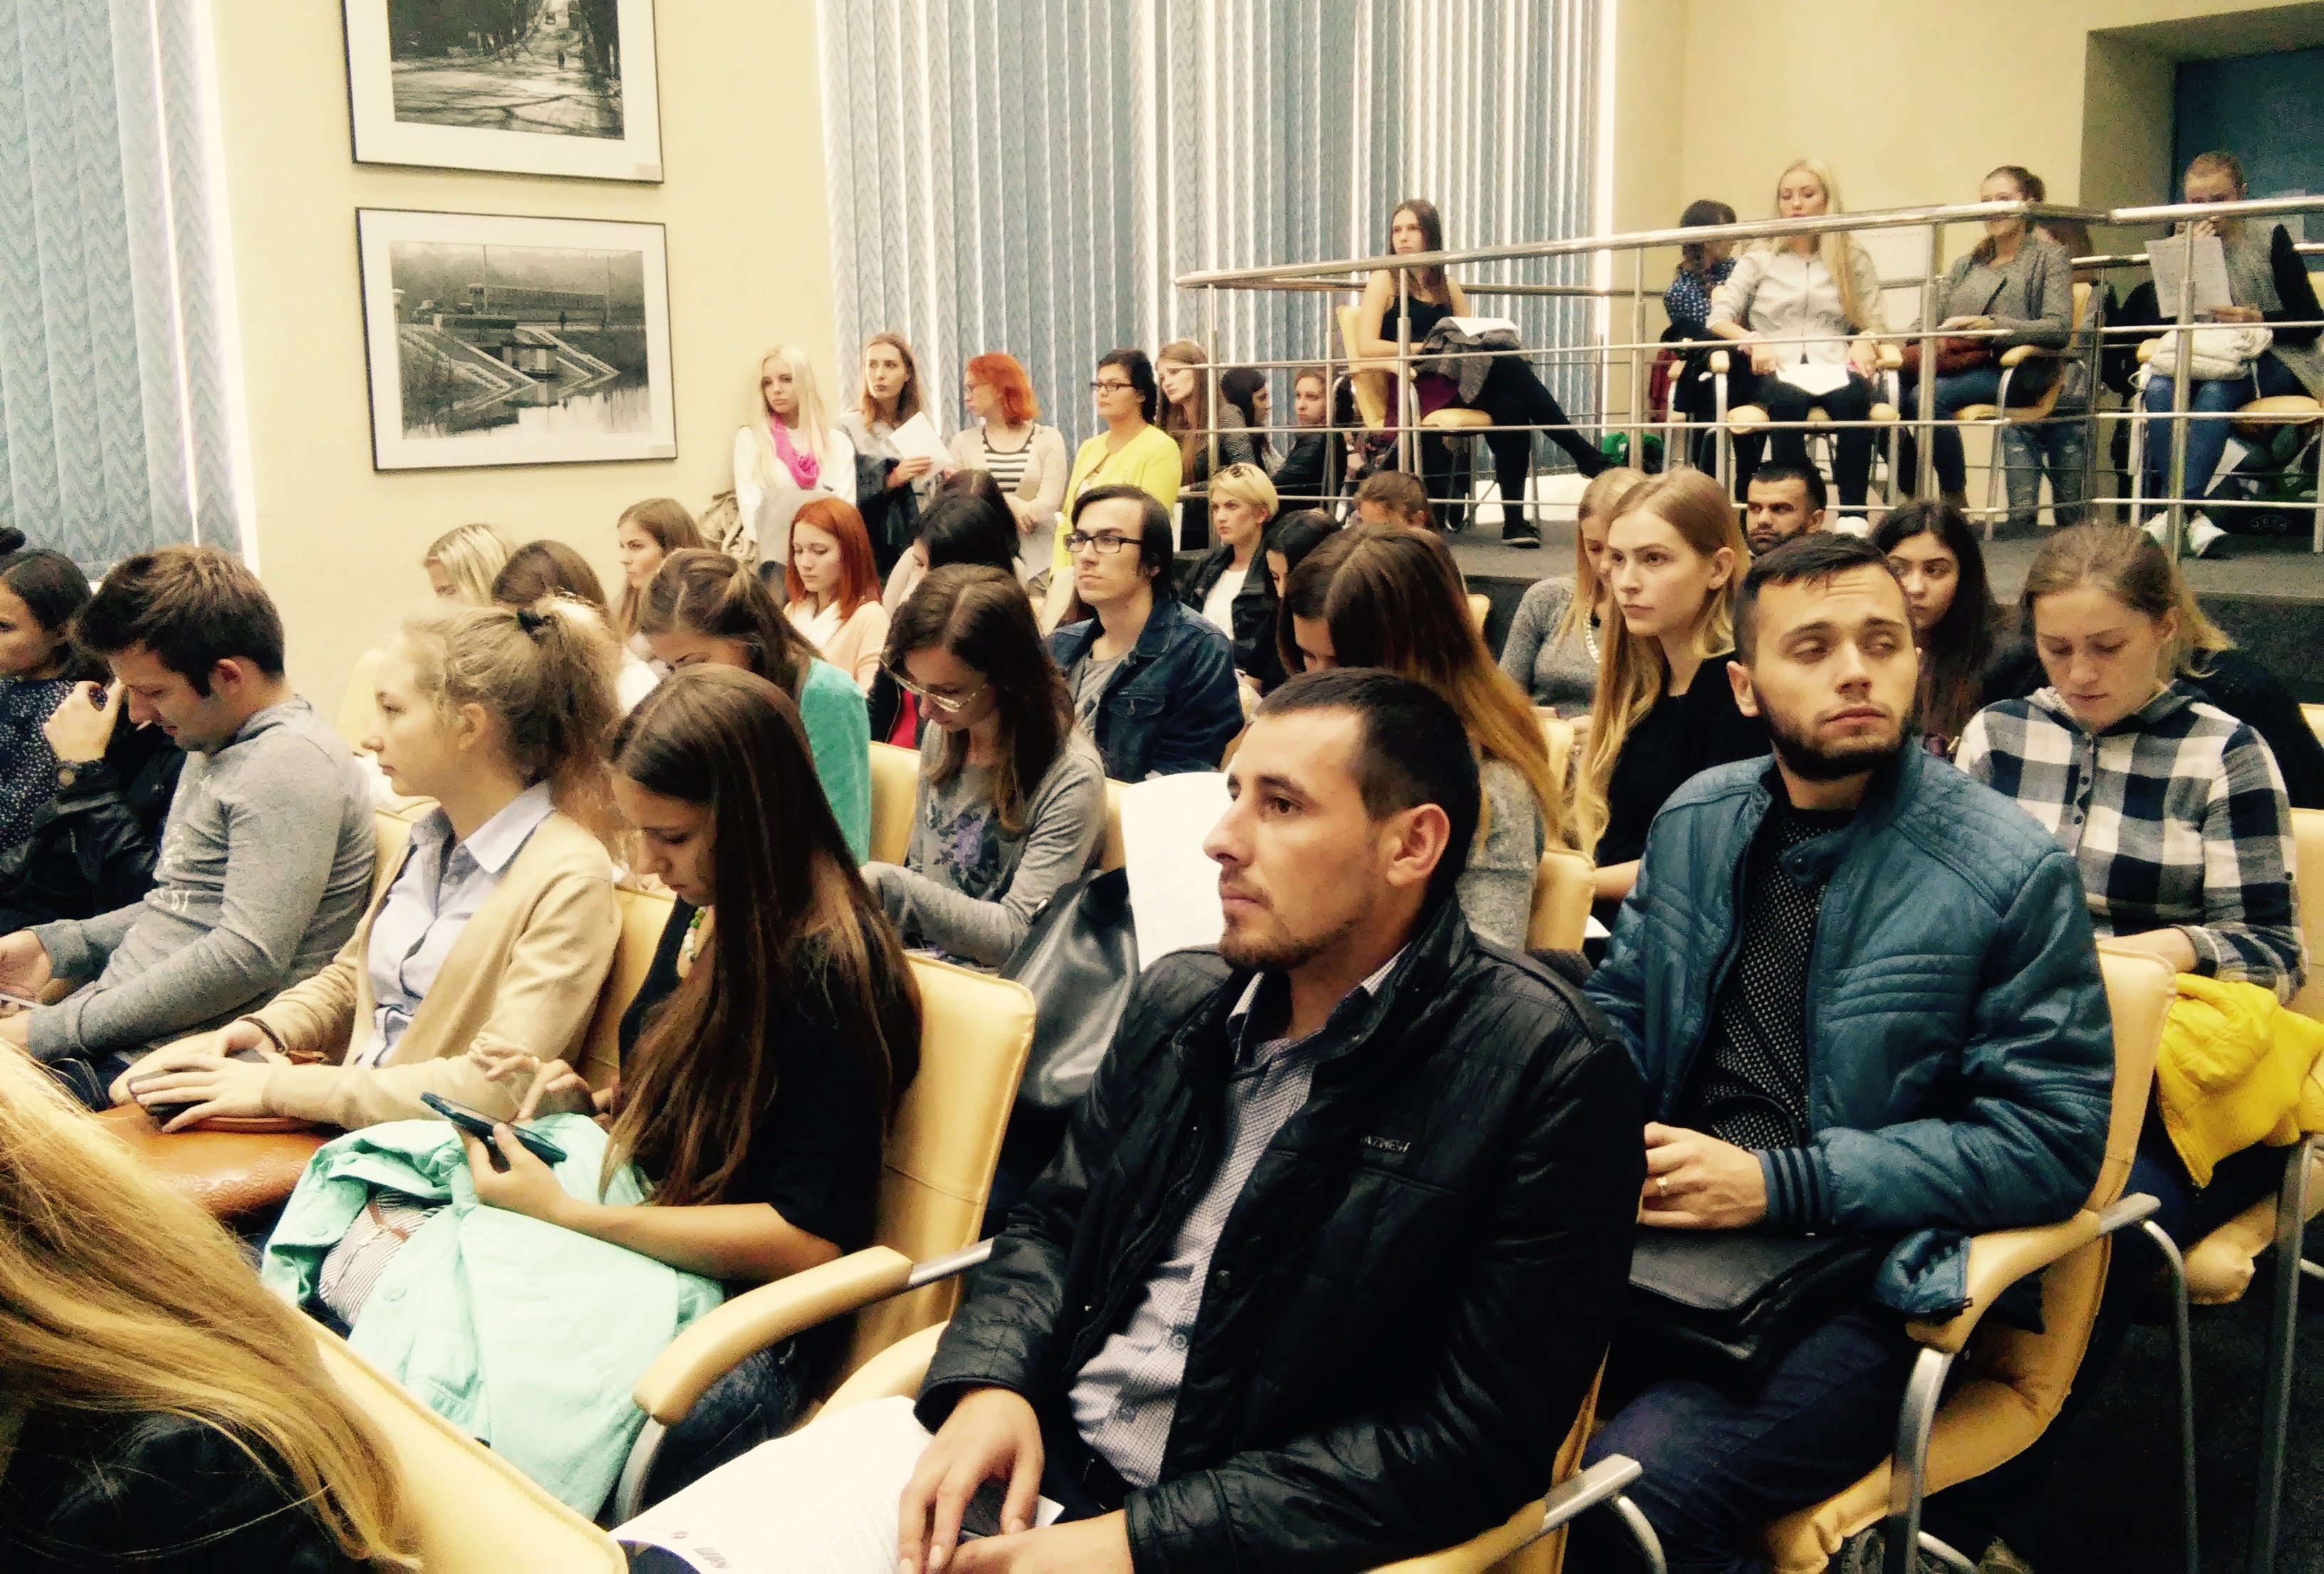 Більше половини аудиторії України не довіряє українським ЗМІ - дослідження Академії української преси